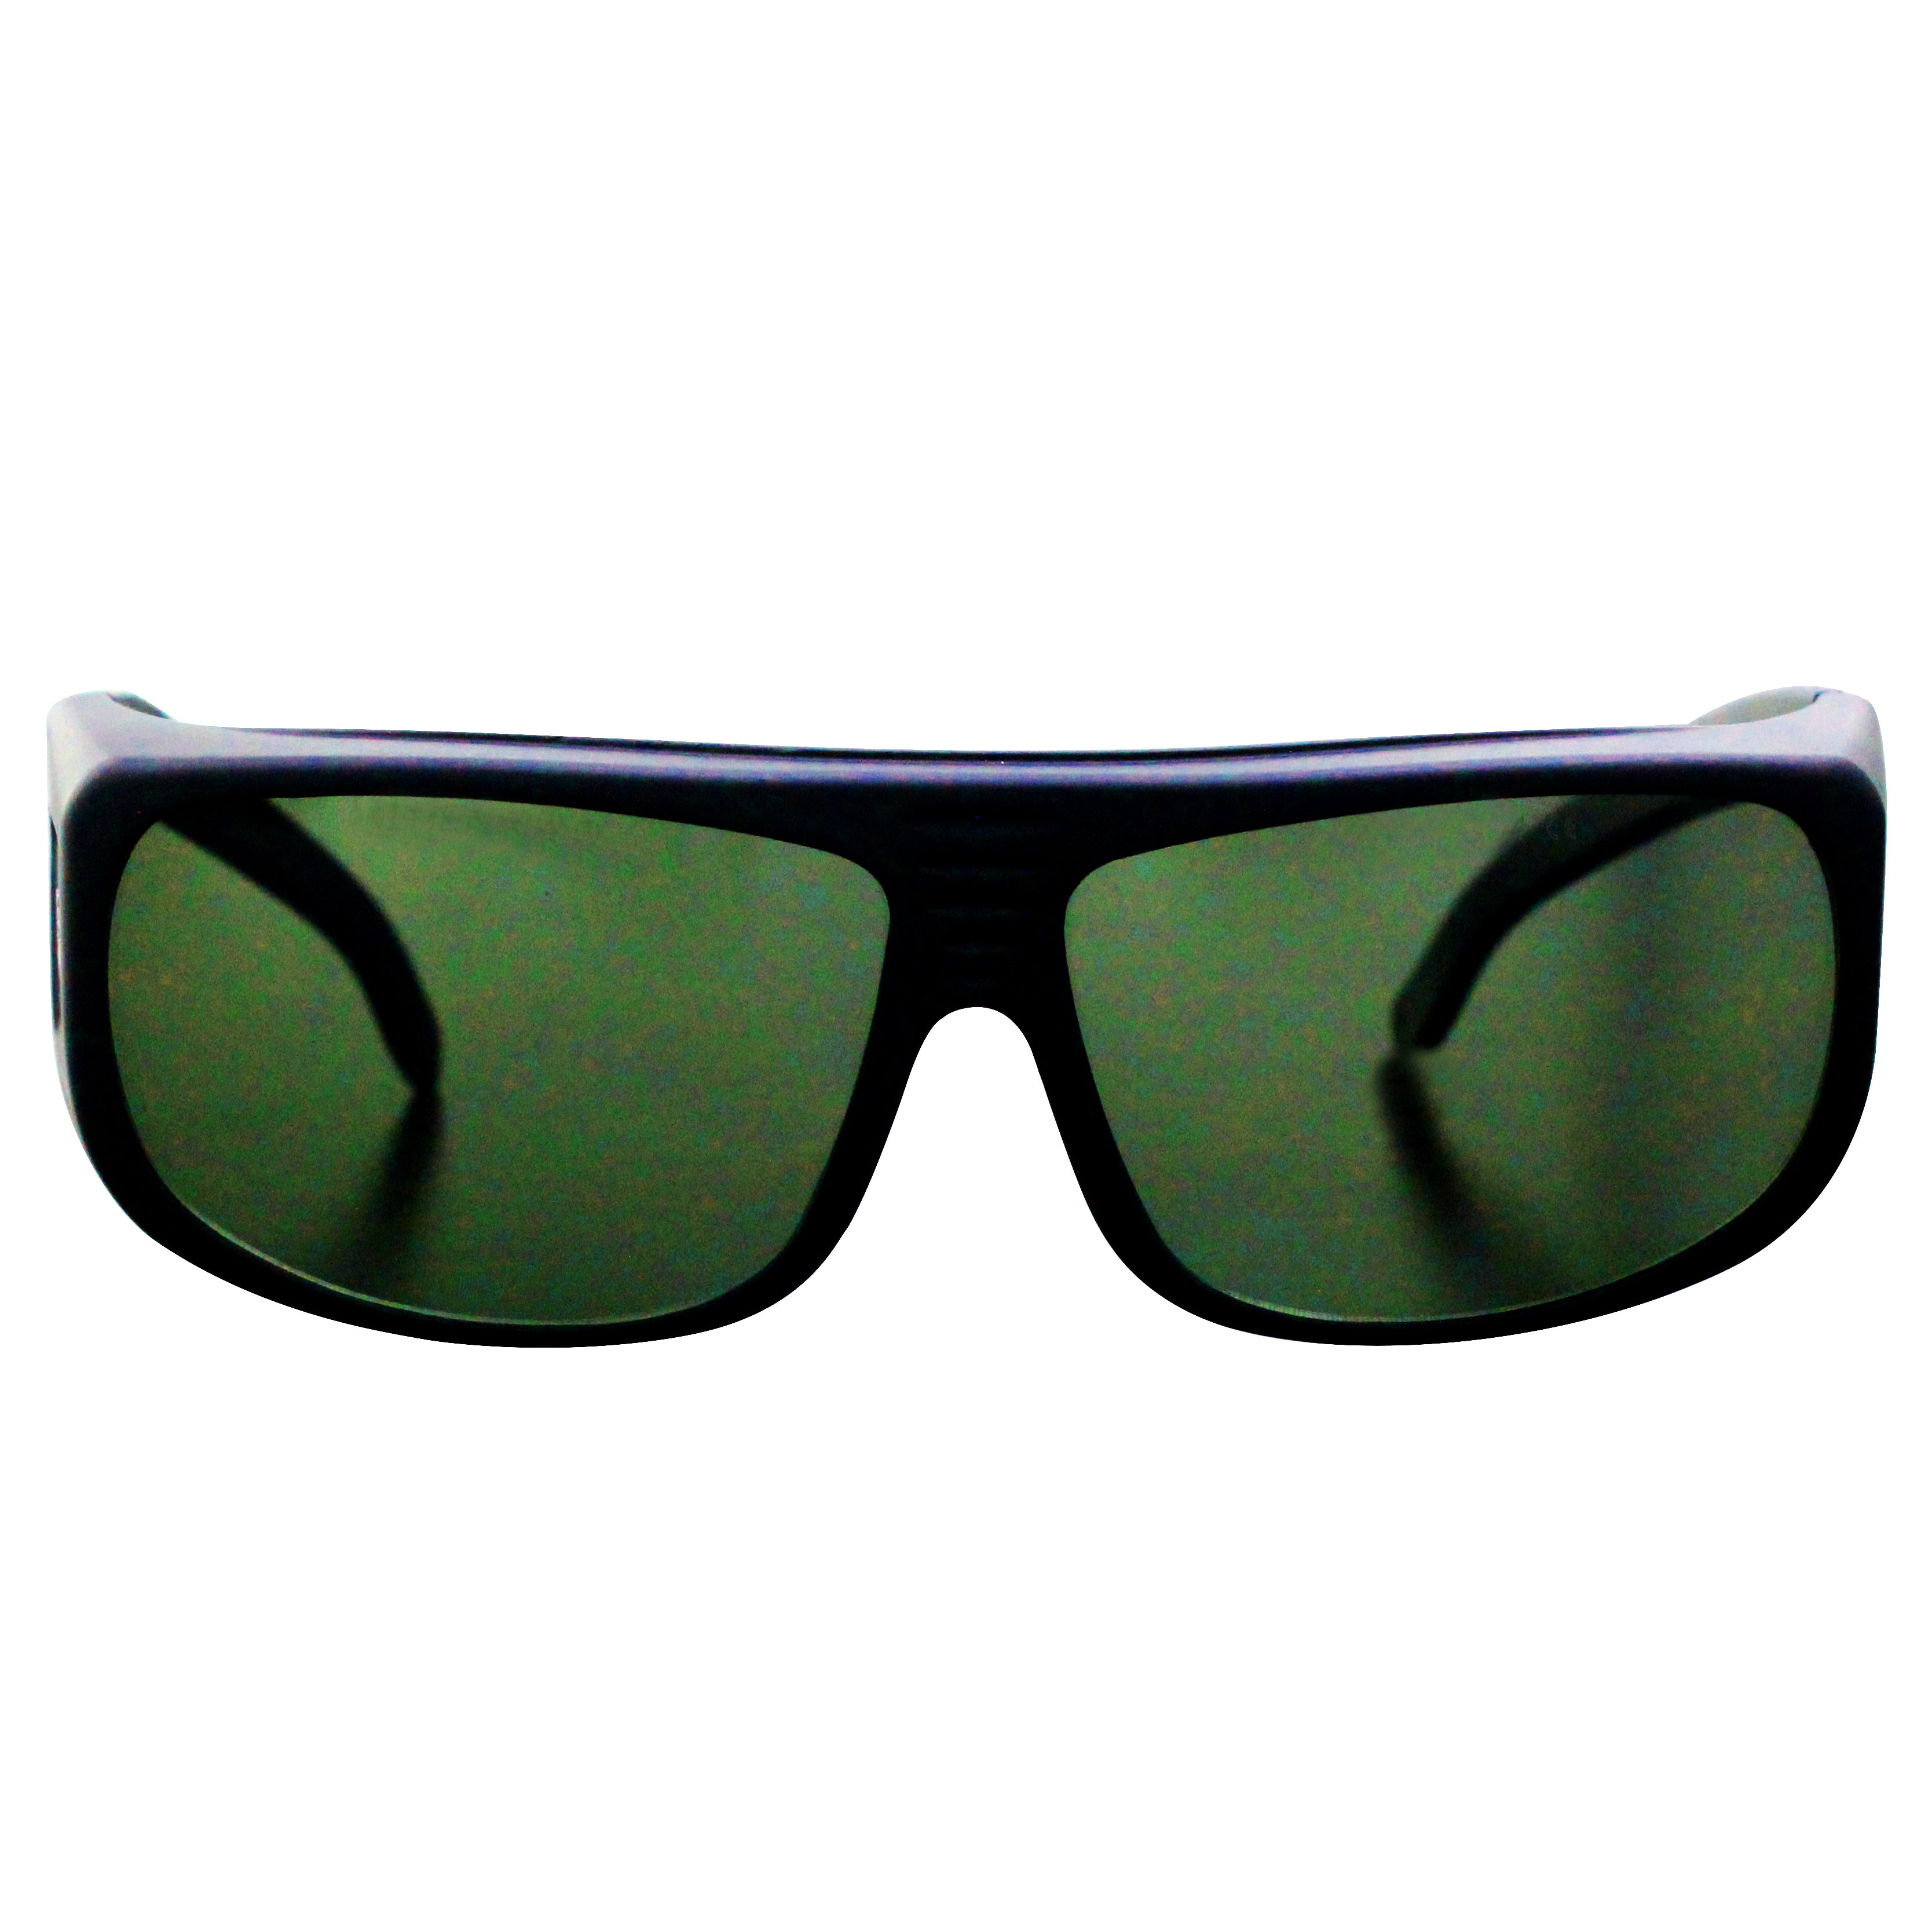 NOUALASER OD7+ 1064 нм волоконный лазер УФ защитные очки